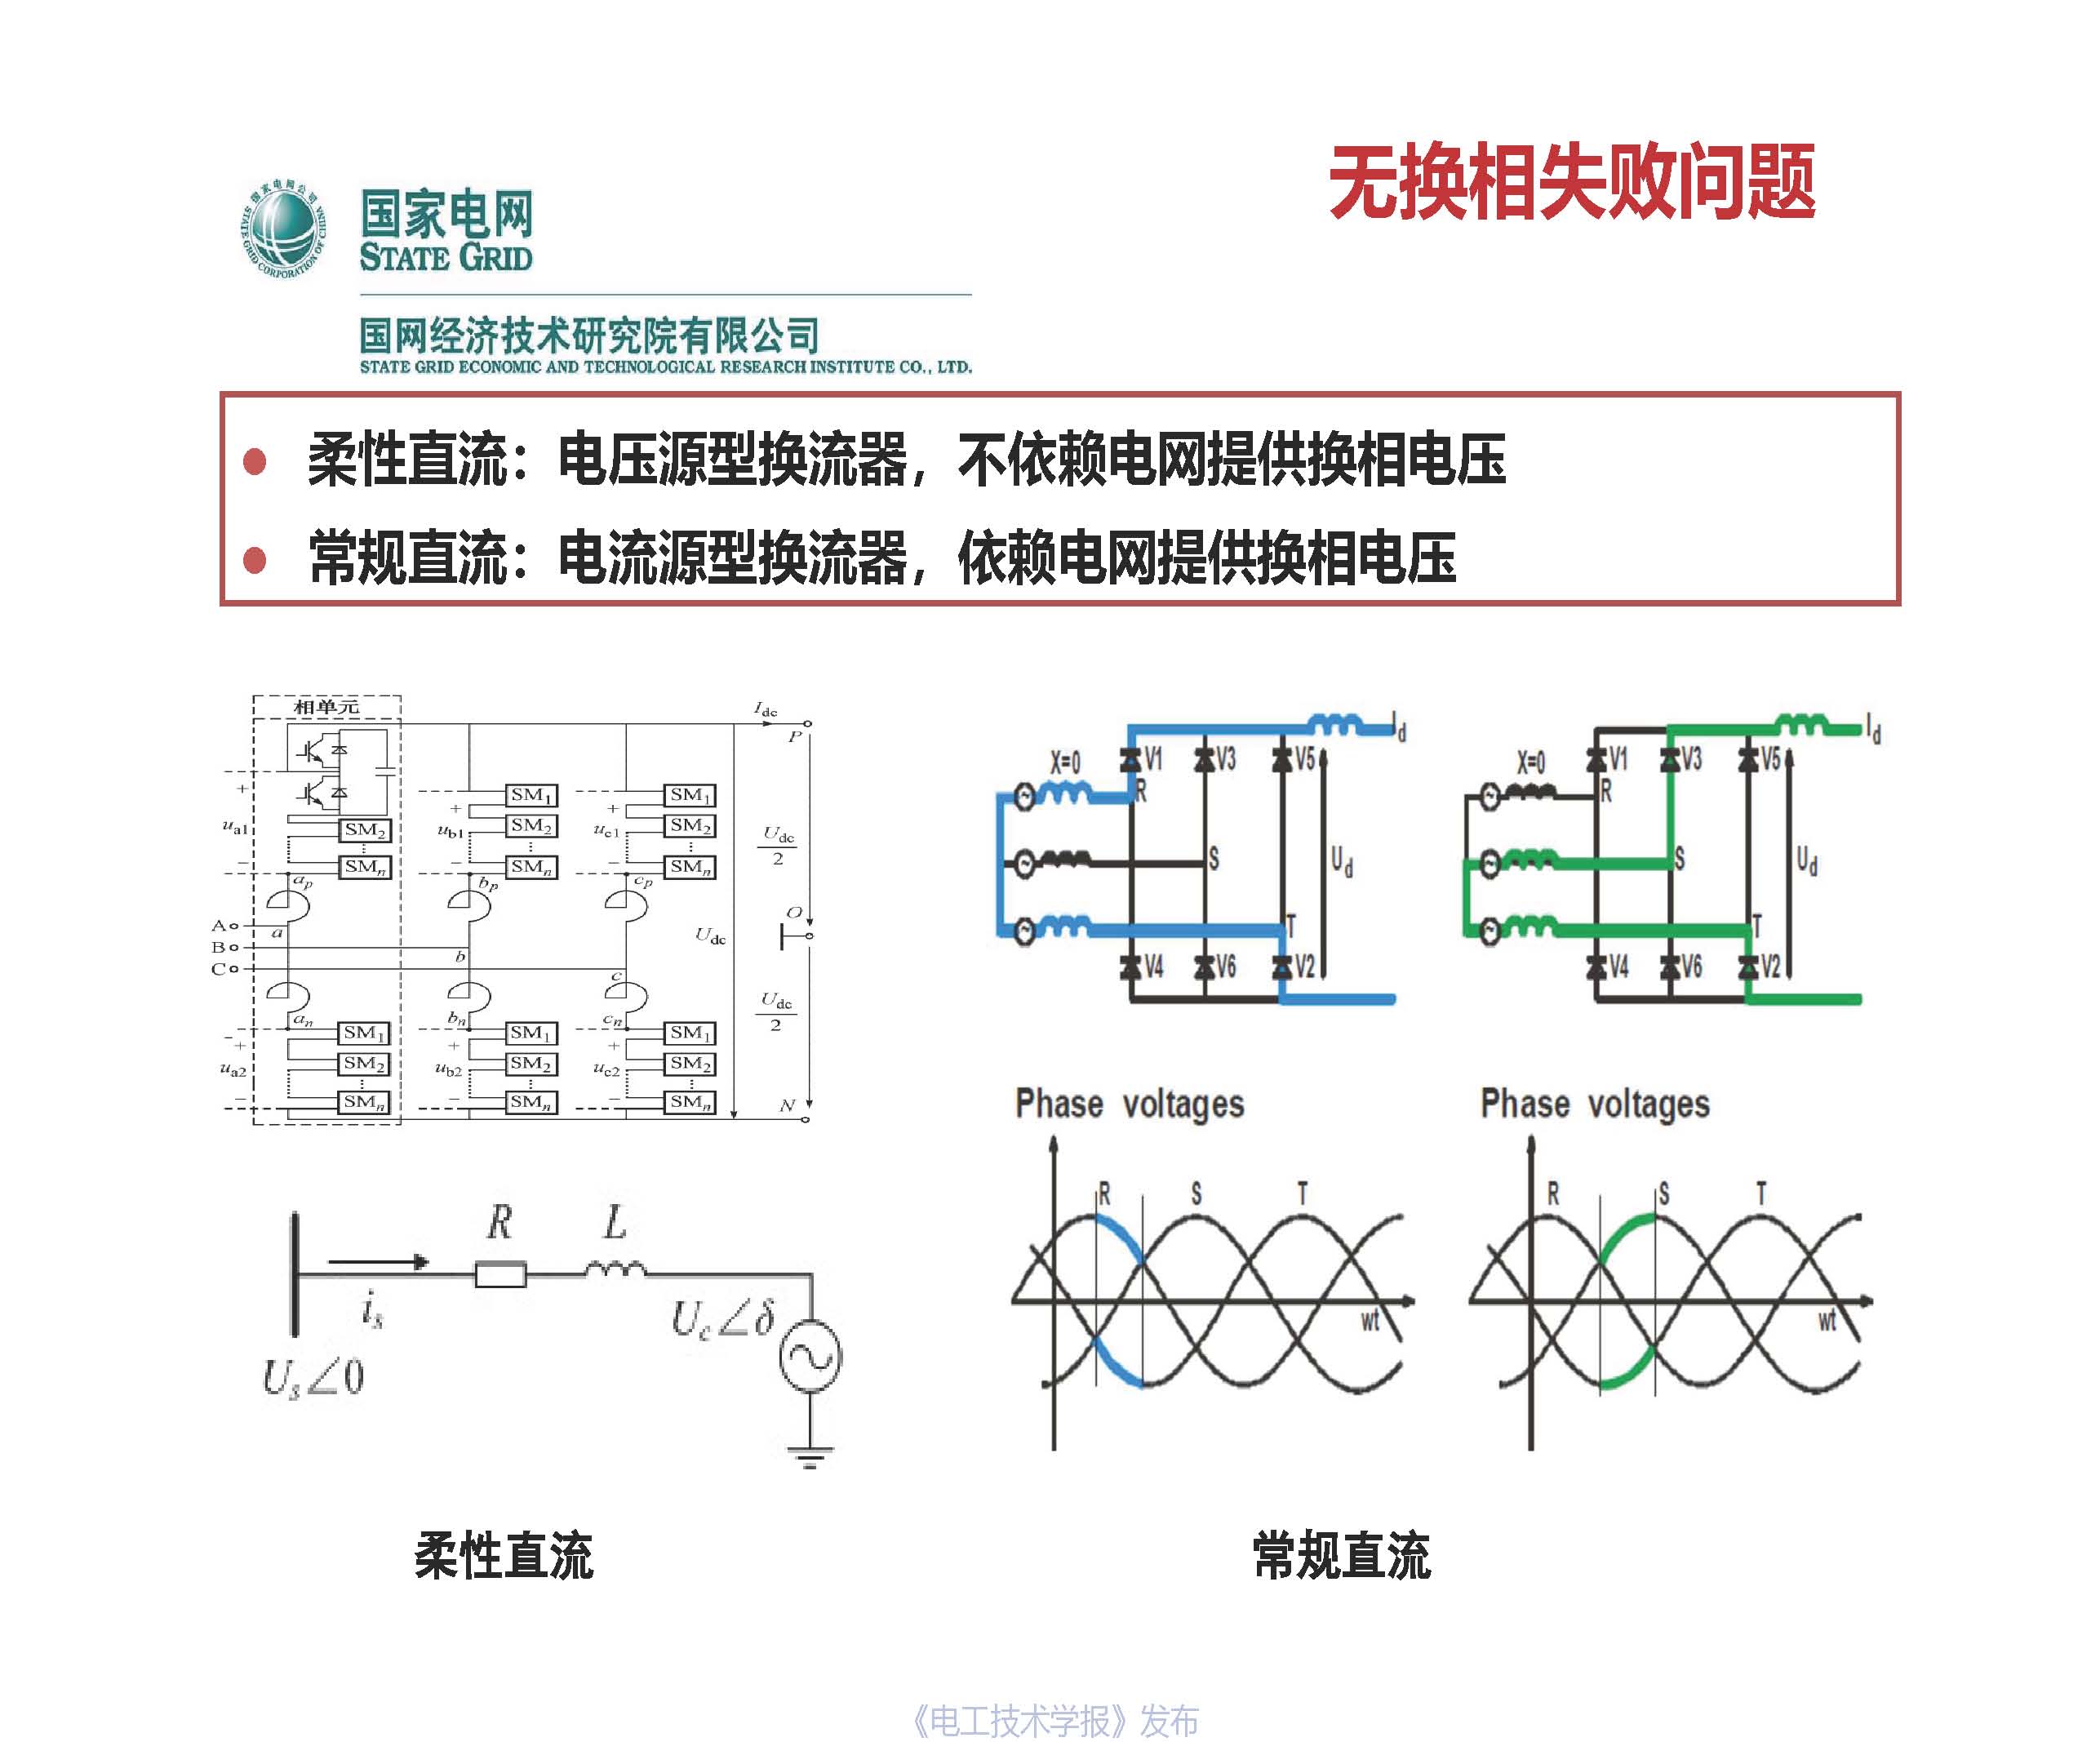 国网经研院直流中心主任工程师梅念：柔性直流系统成套设计